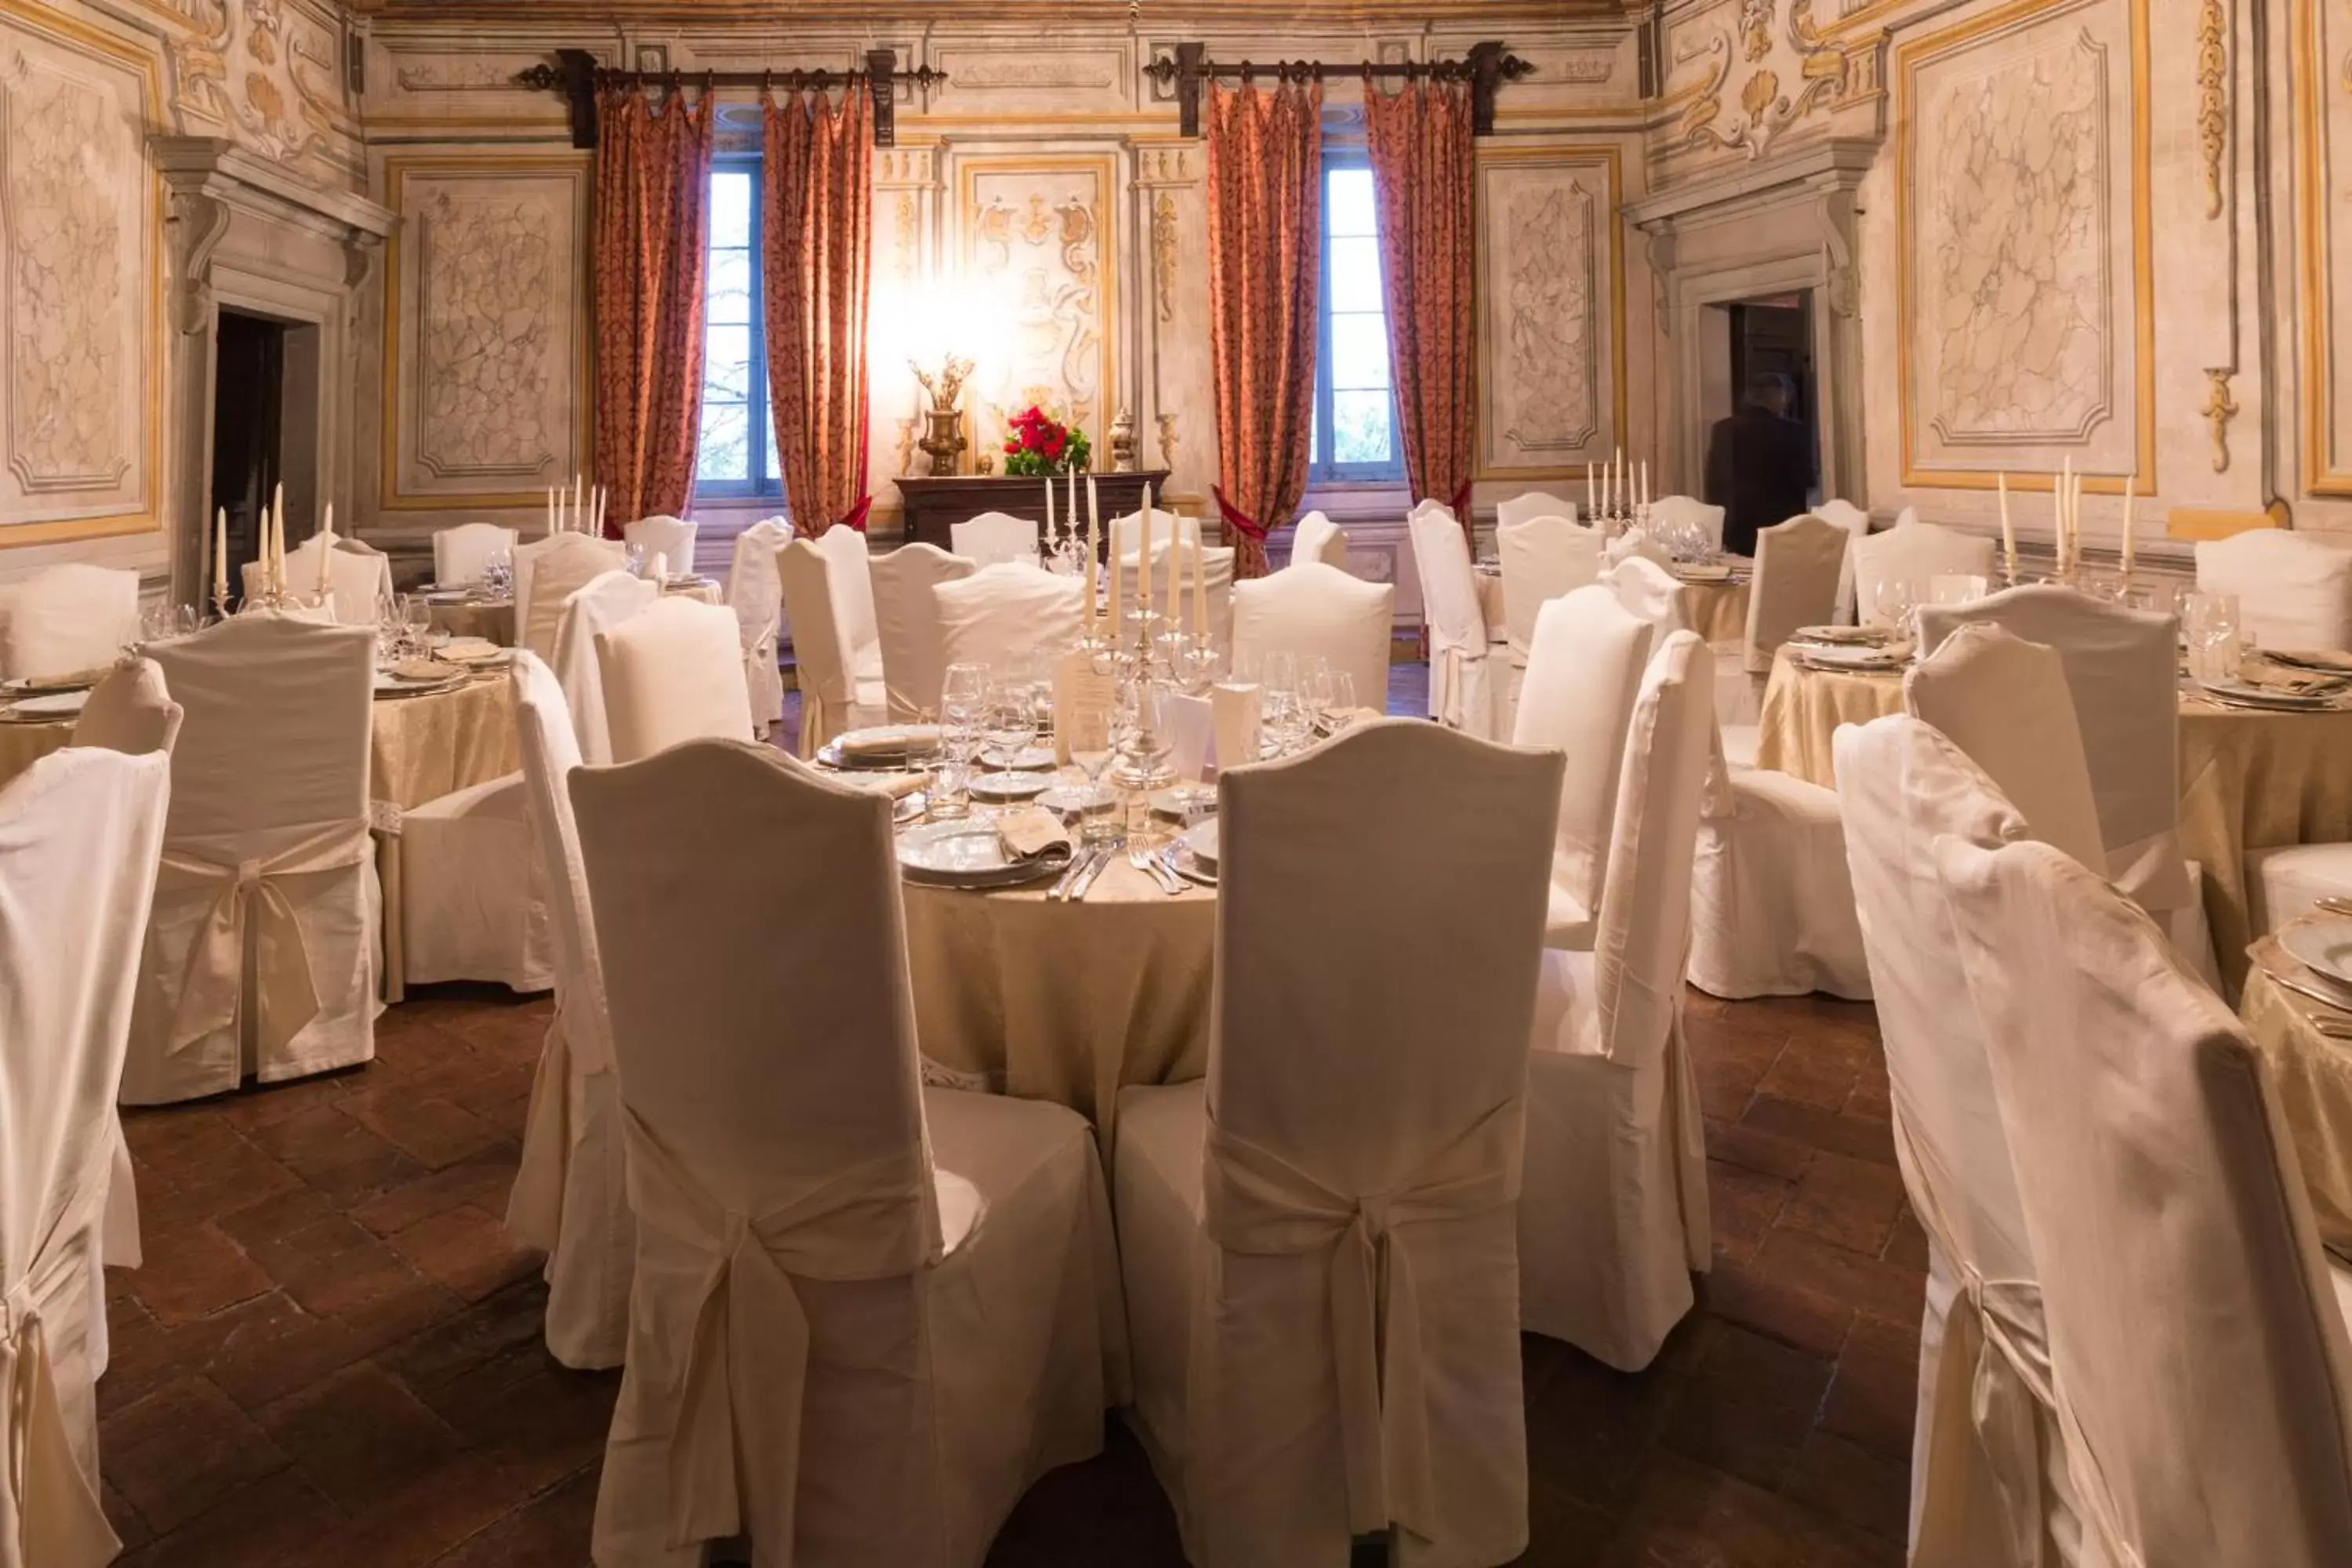 Banquet/Function facilities, Banquet Facilities in Hotel Bramante